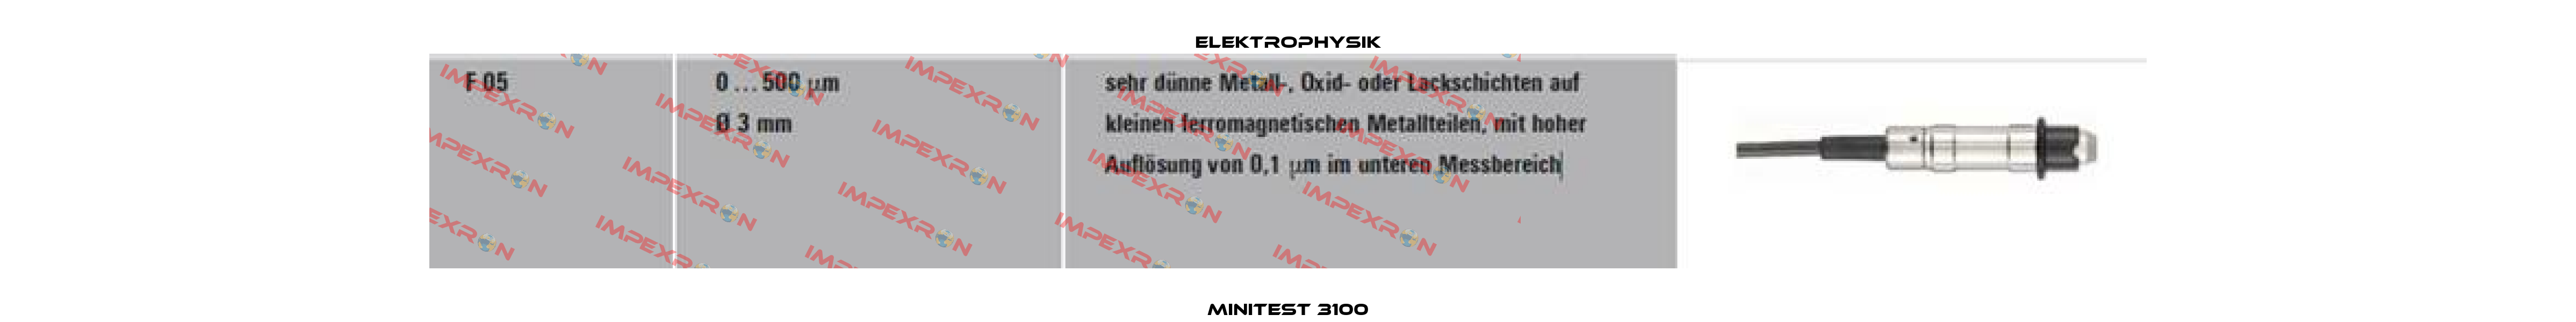 MiniTest 3100 ElektroPhysik